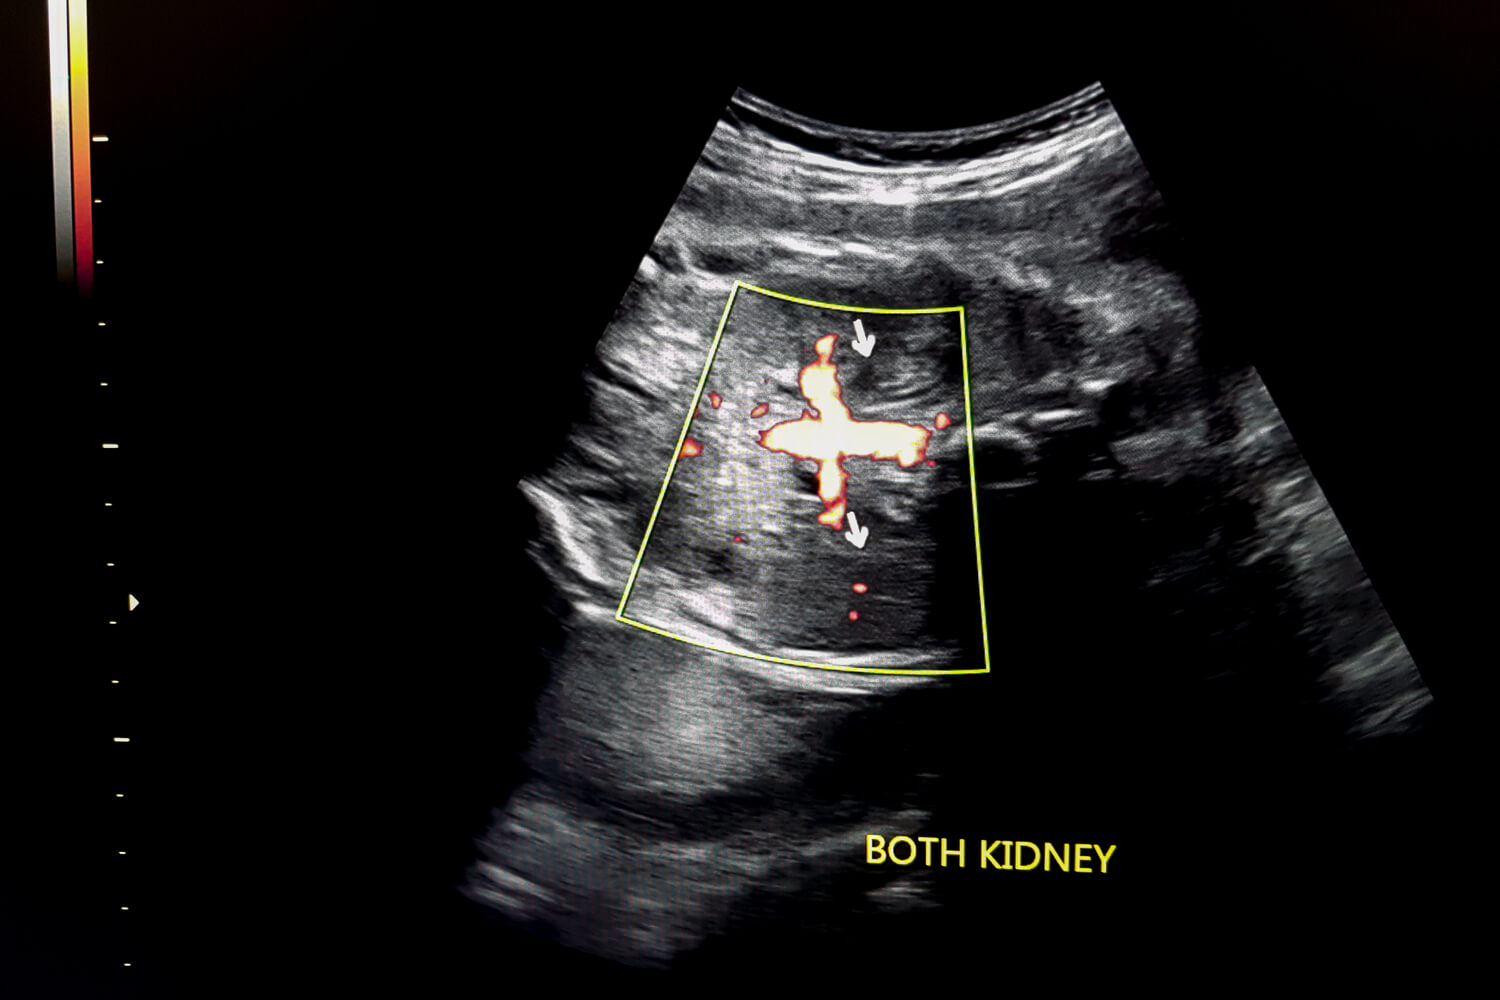 Fetal Kidney